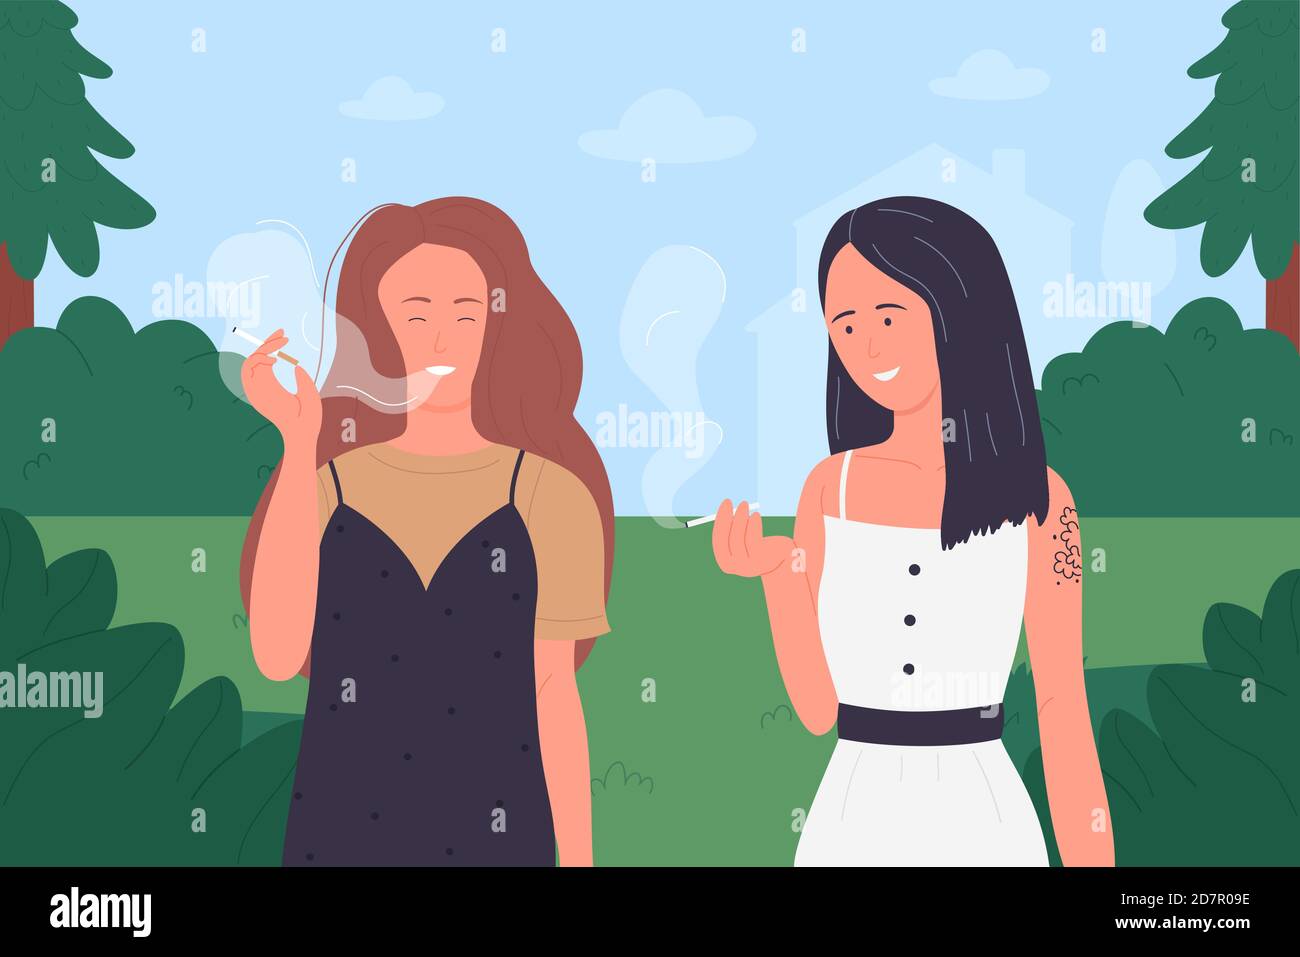 Las niñas fuman vector ilustración. Dibujos animados joven fumadora mujer amigos grupo de celebración de cigarrillos, muy divertido personajes femeninos fumar tabaco o marihuana en el verano verde naturaleza paisaje de fondo Ilustración del Vector